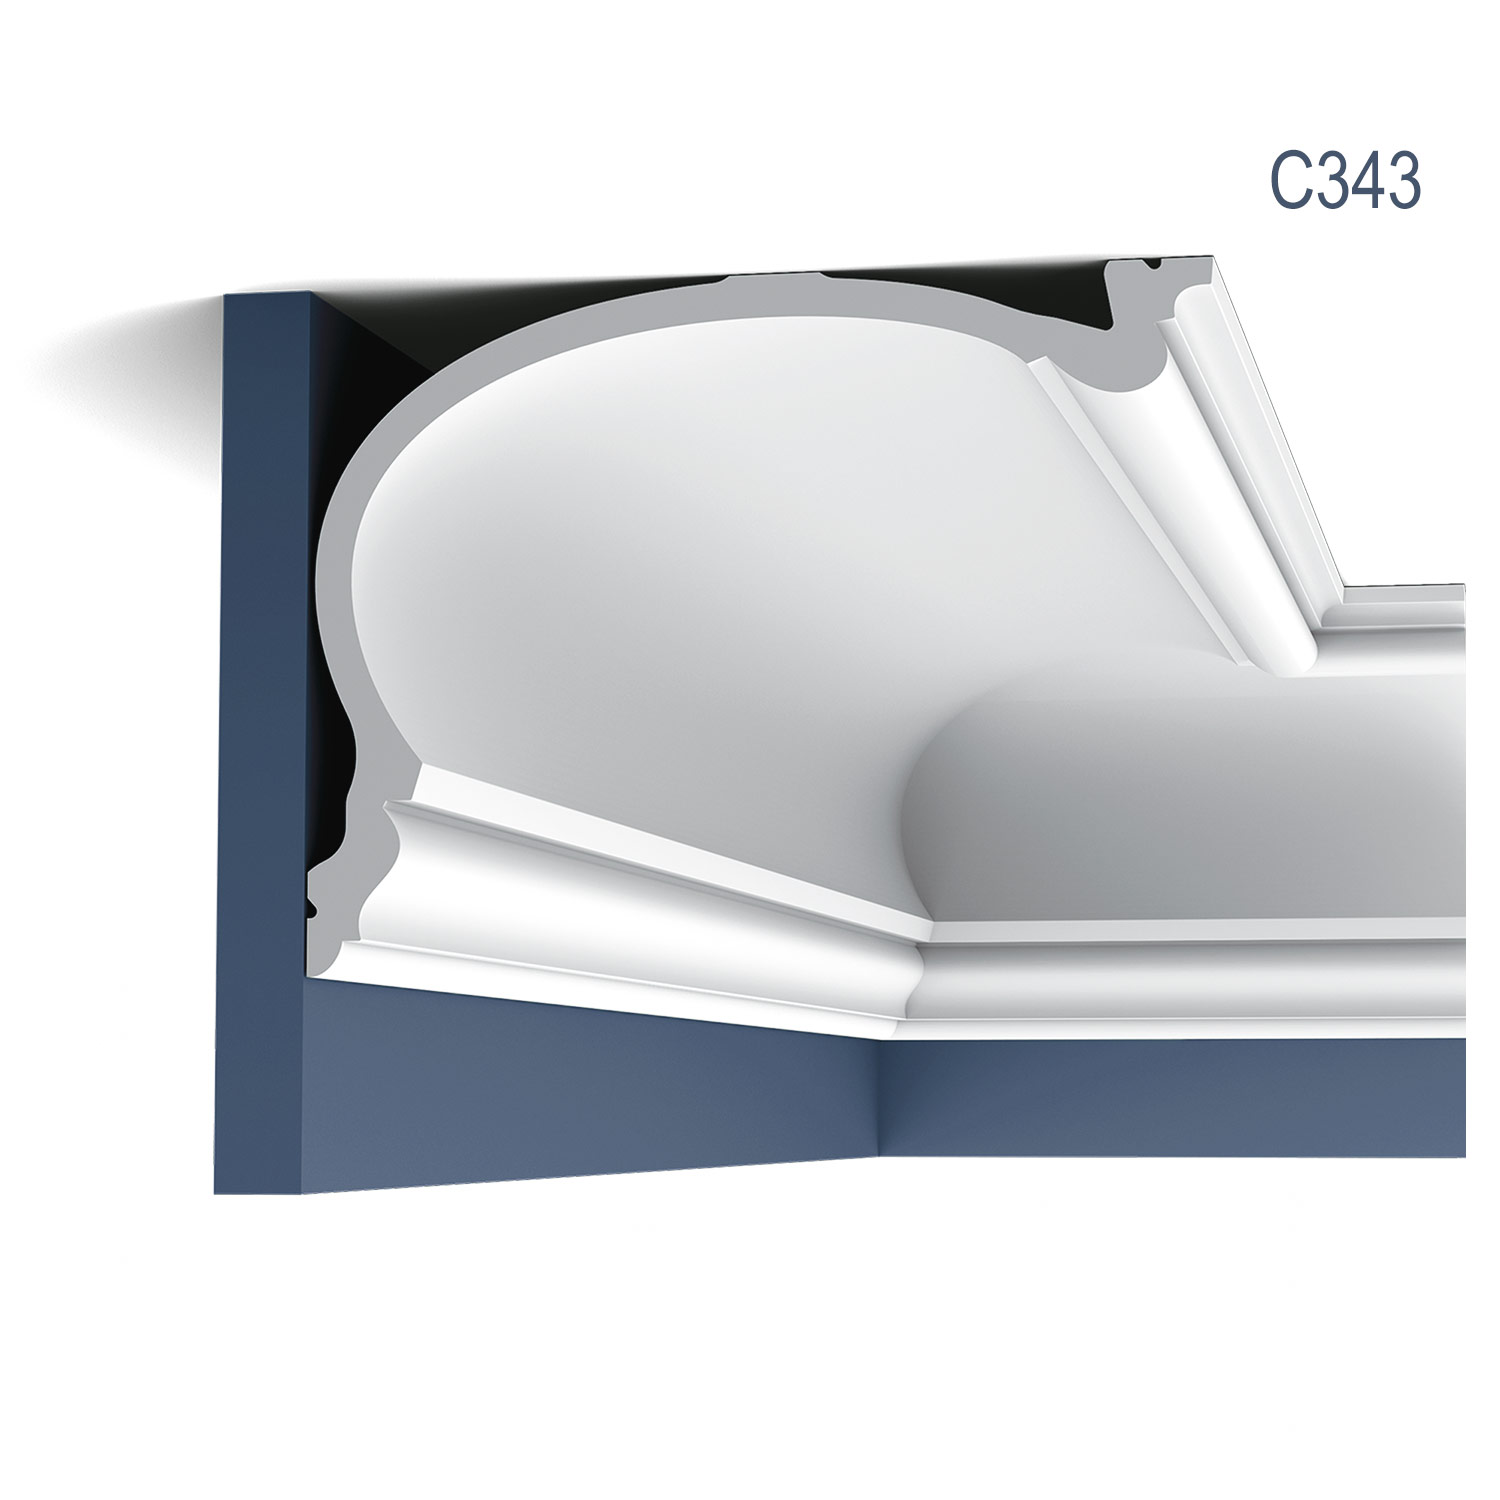 Cornisa Luxxus C343, Dimensiuni: 200 X 25 X 19 cm, Orac Decor